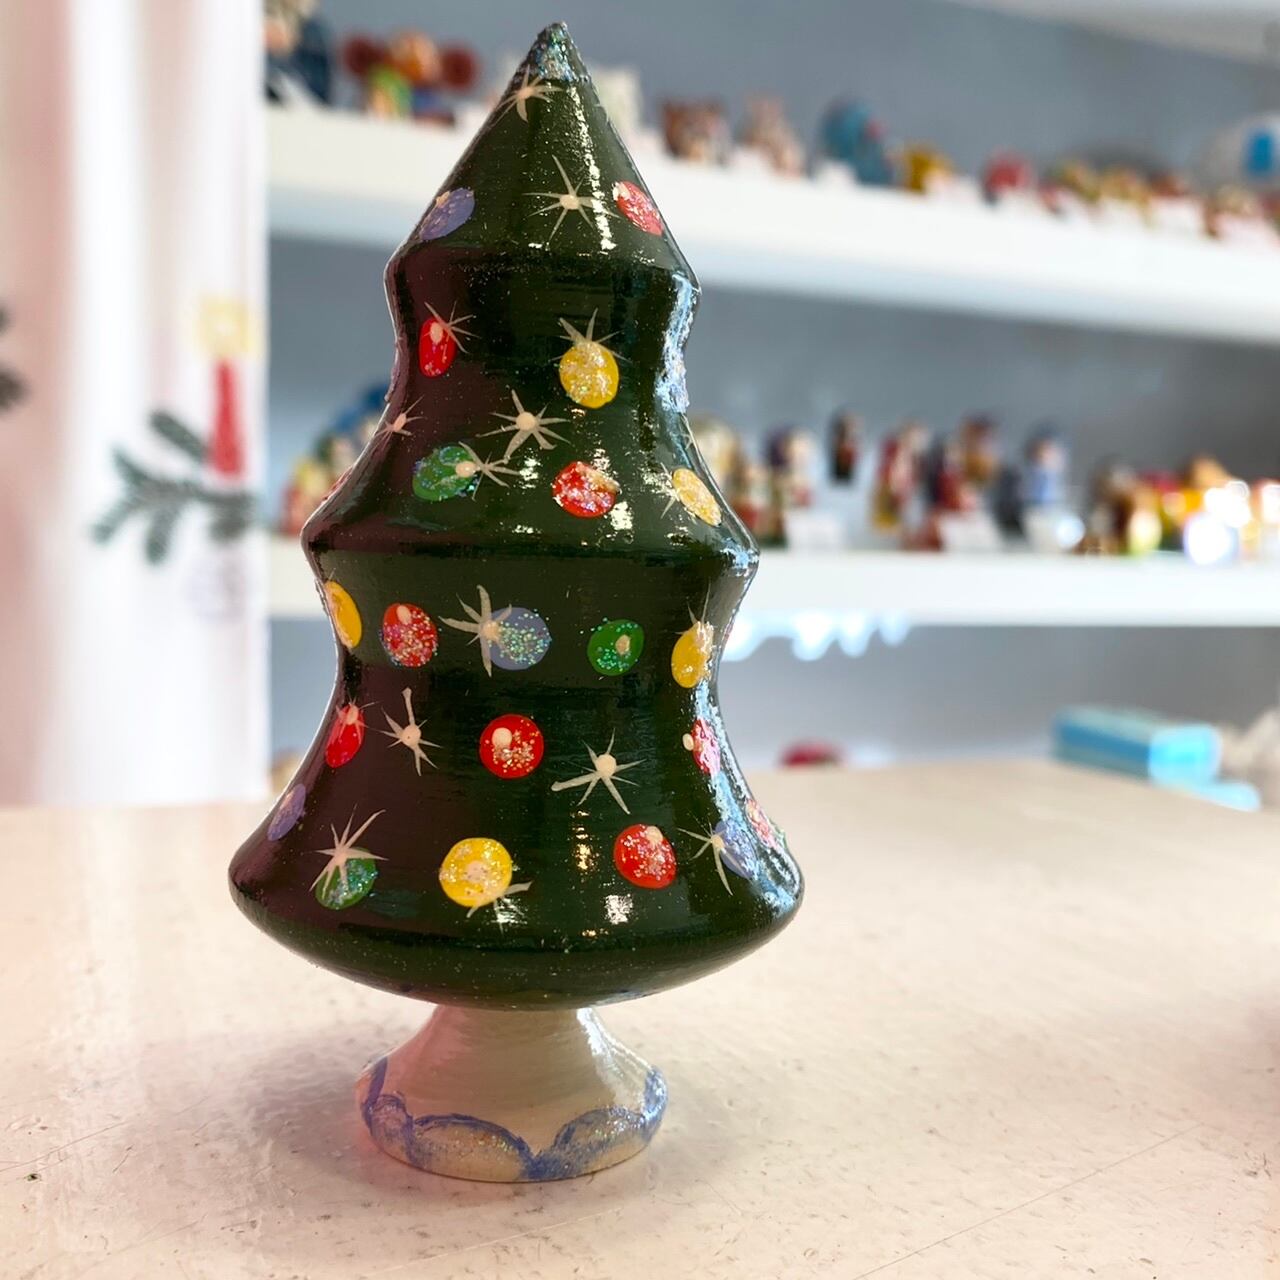 Wedgwood 2019 ホリデーオーナメント 置物 クリスマスツリー。 通販